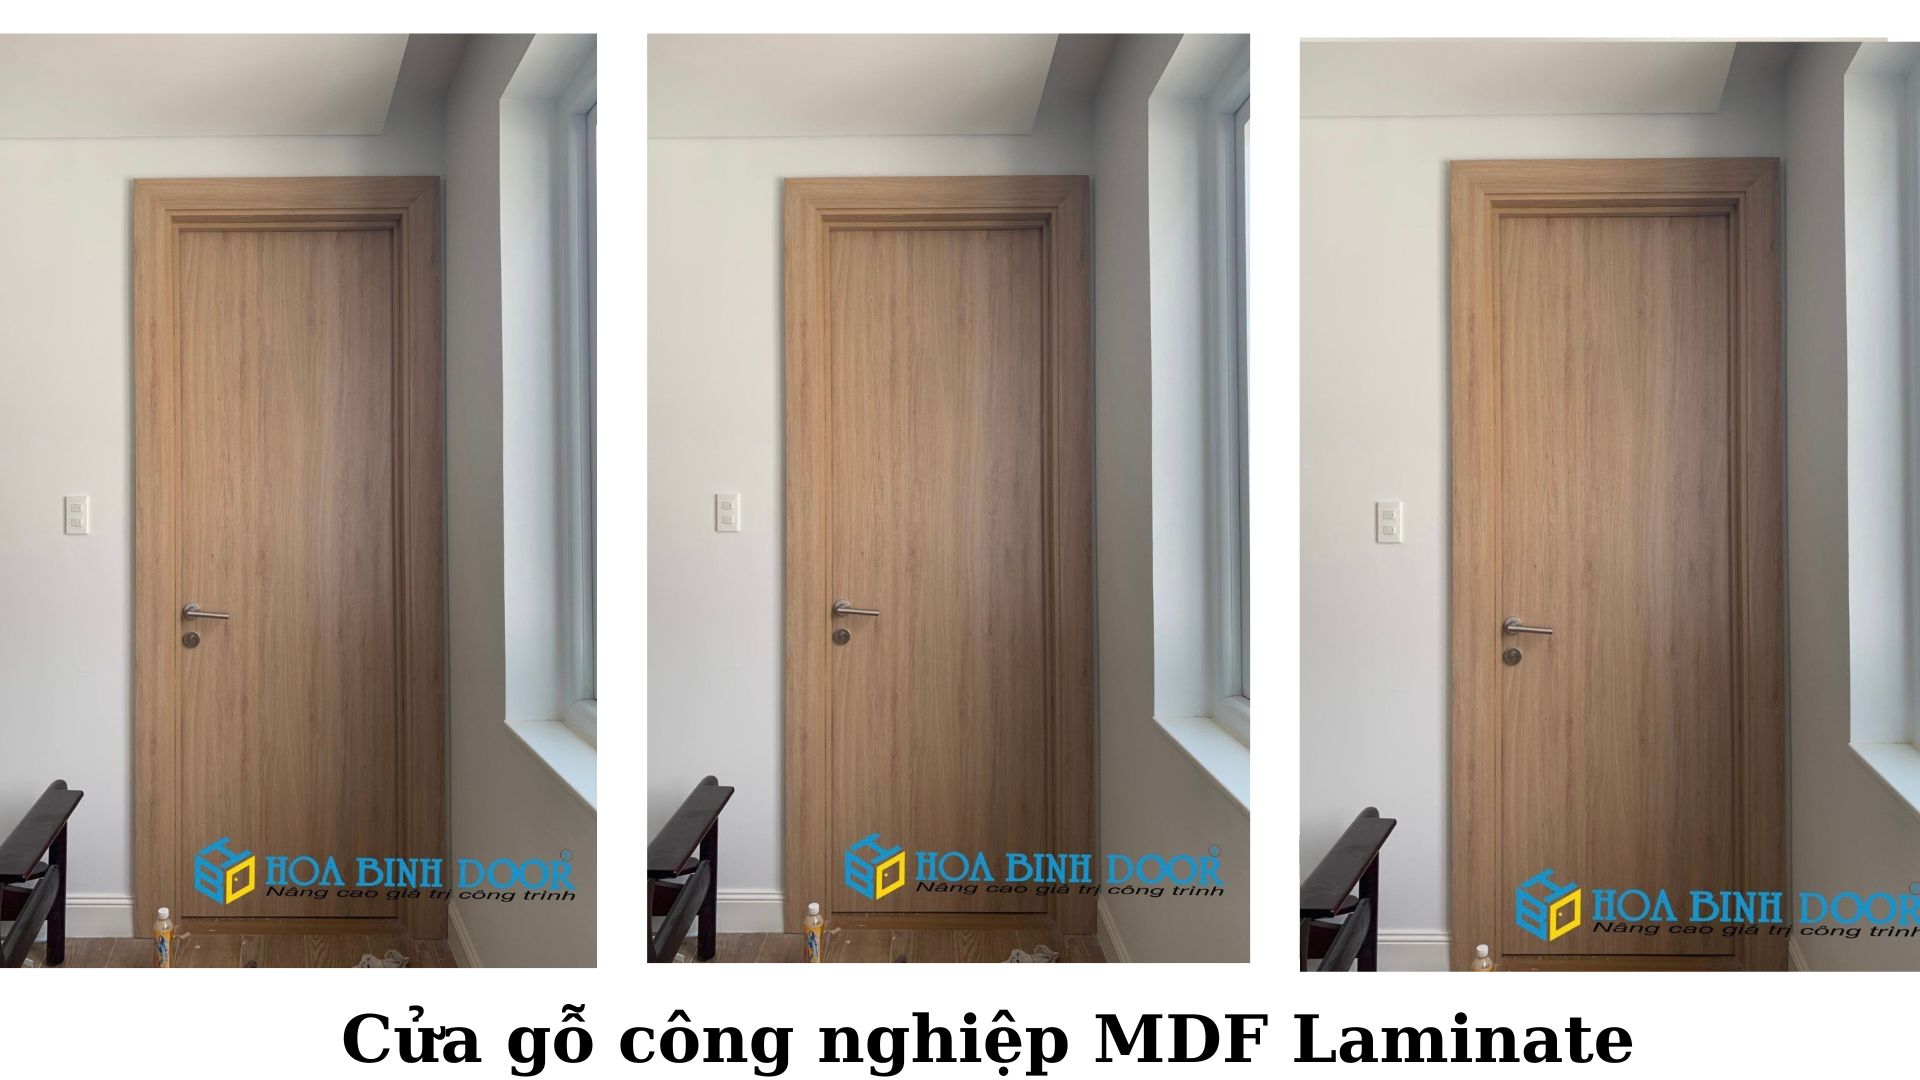 Cửa MDF Laminate tại Châu Thành - Long An